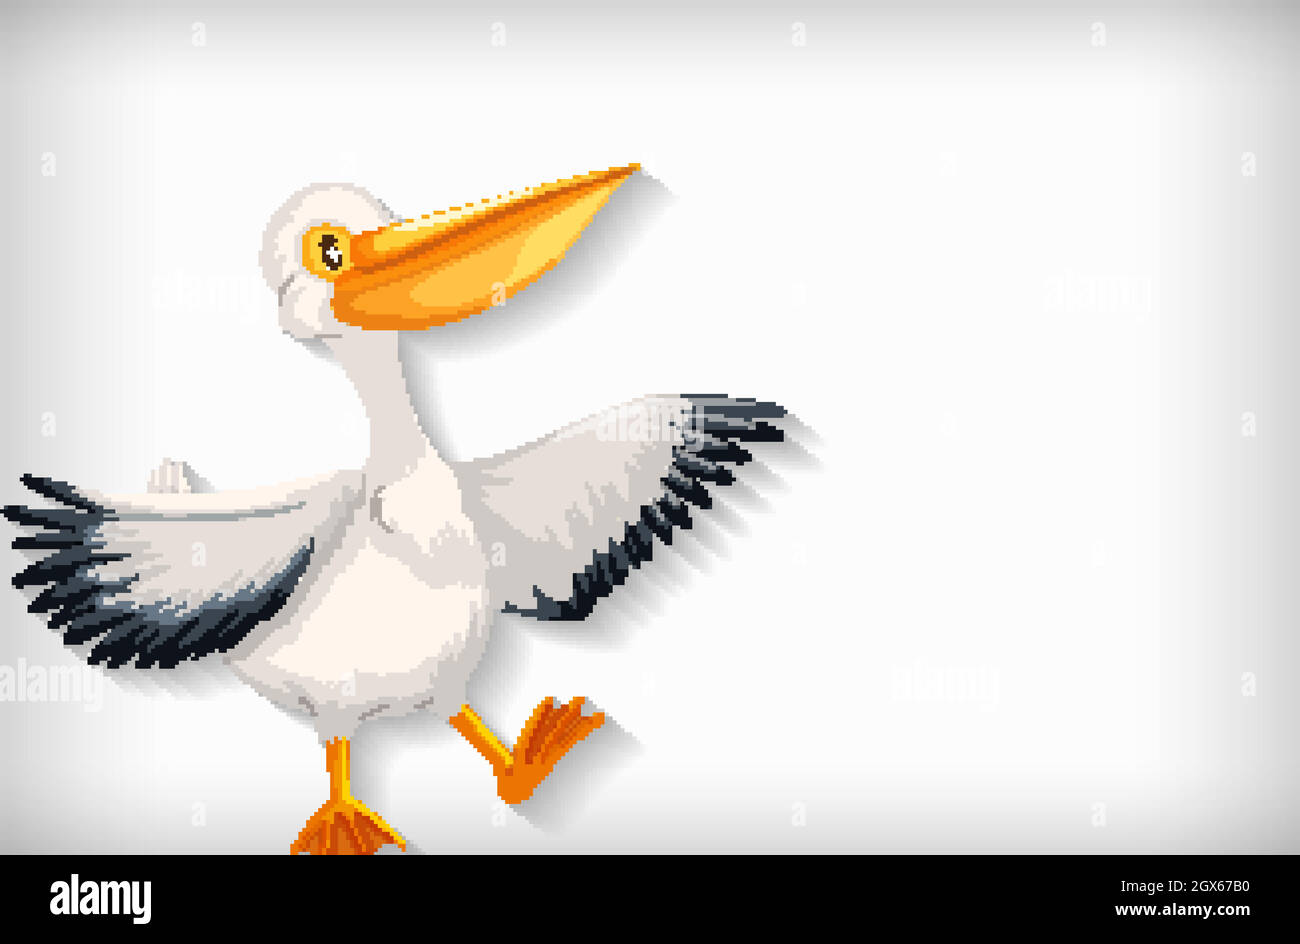 Hintergrundvorlage mit einfarbiger Farbe und Pelikanvögel Stock Vektor